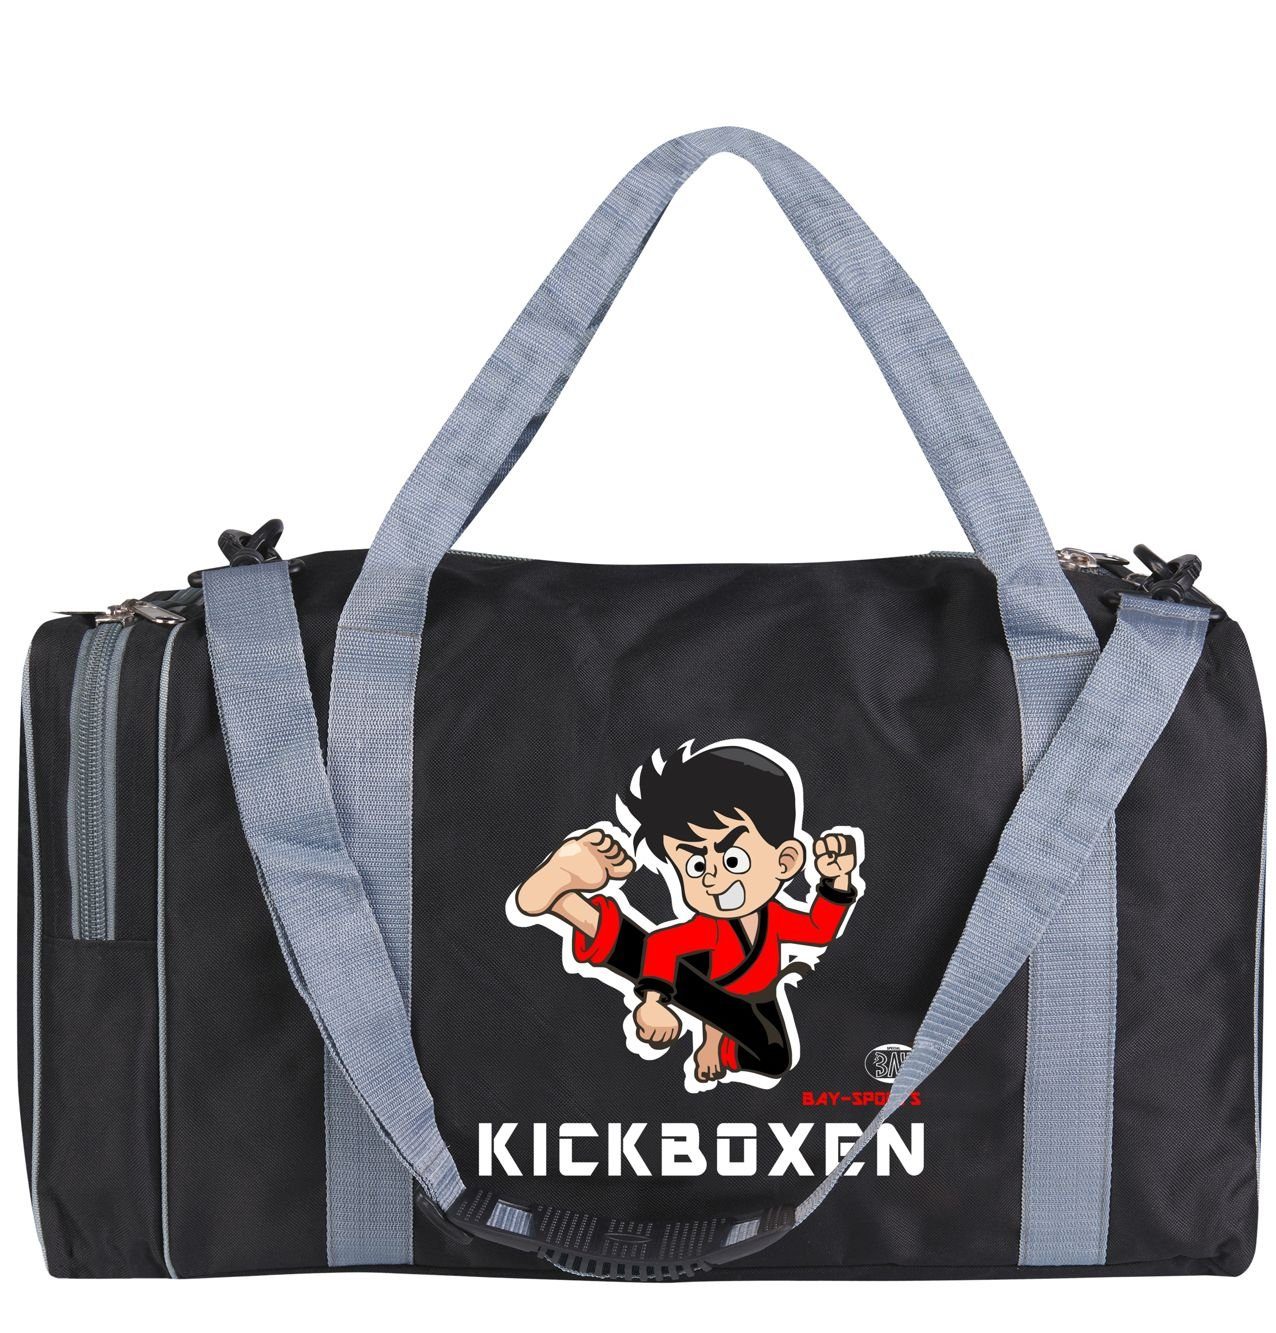 BAY-Sports Sporttasche Kickboxen Kinder cm 50 Sporttasche für schwarz/grau